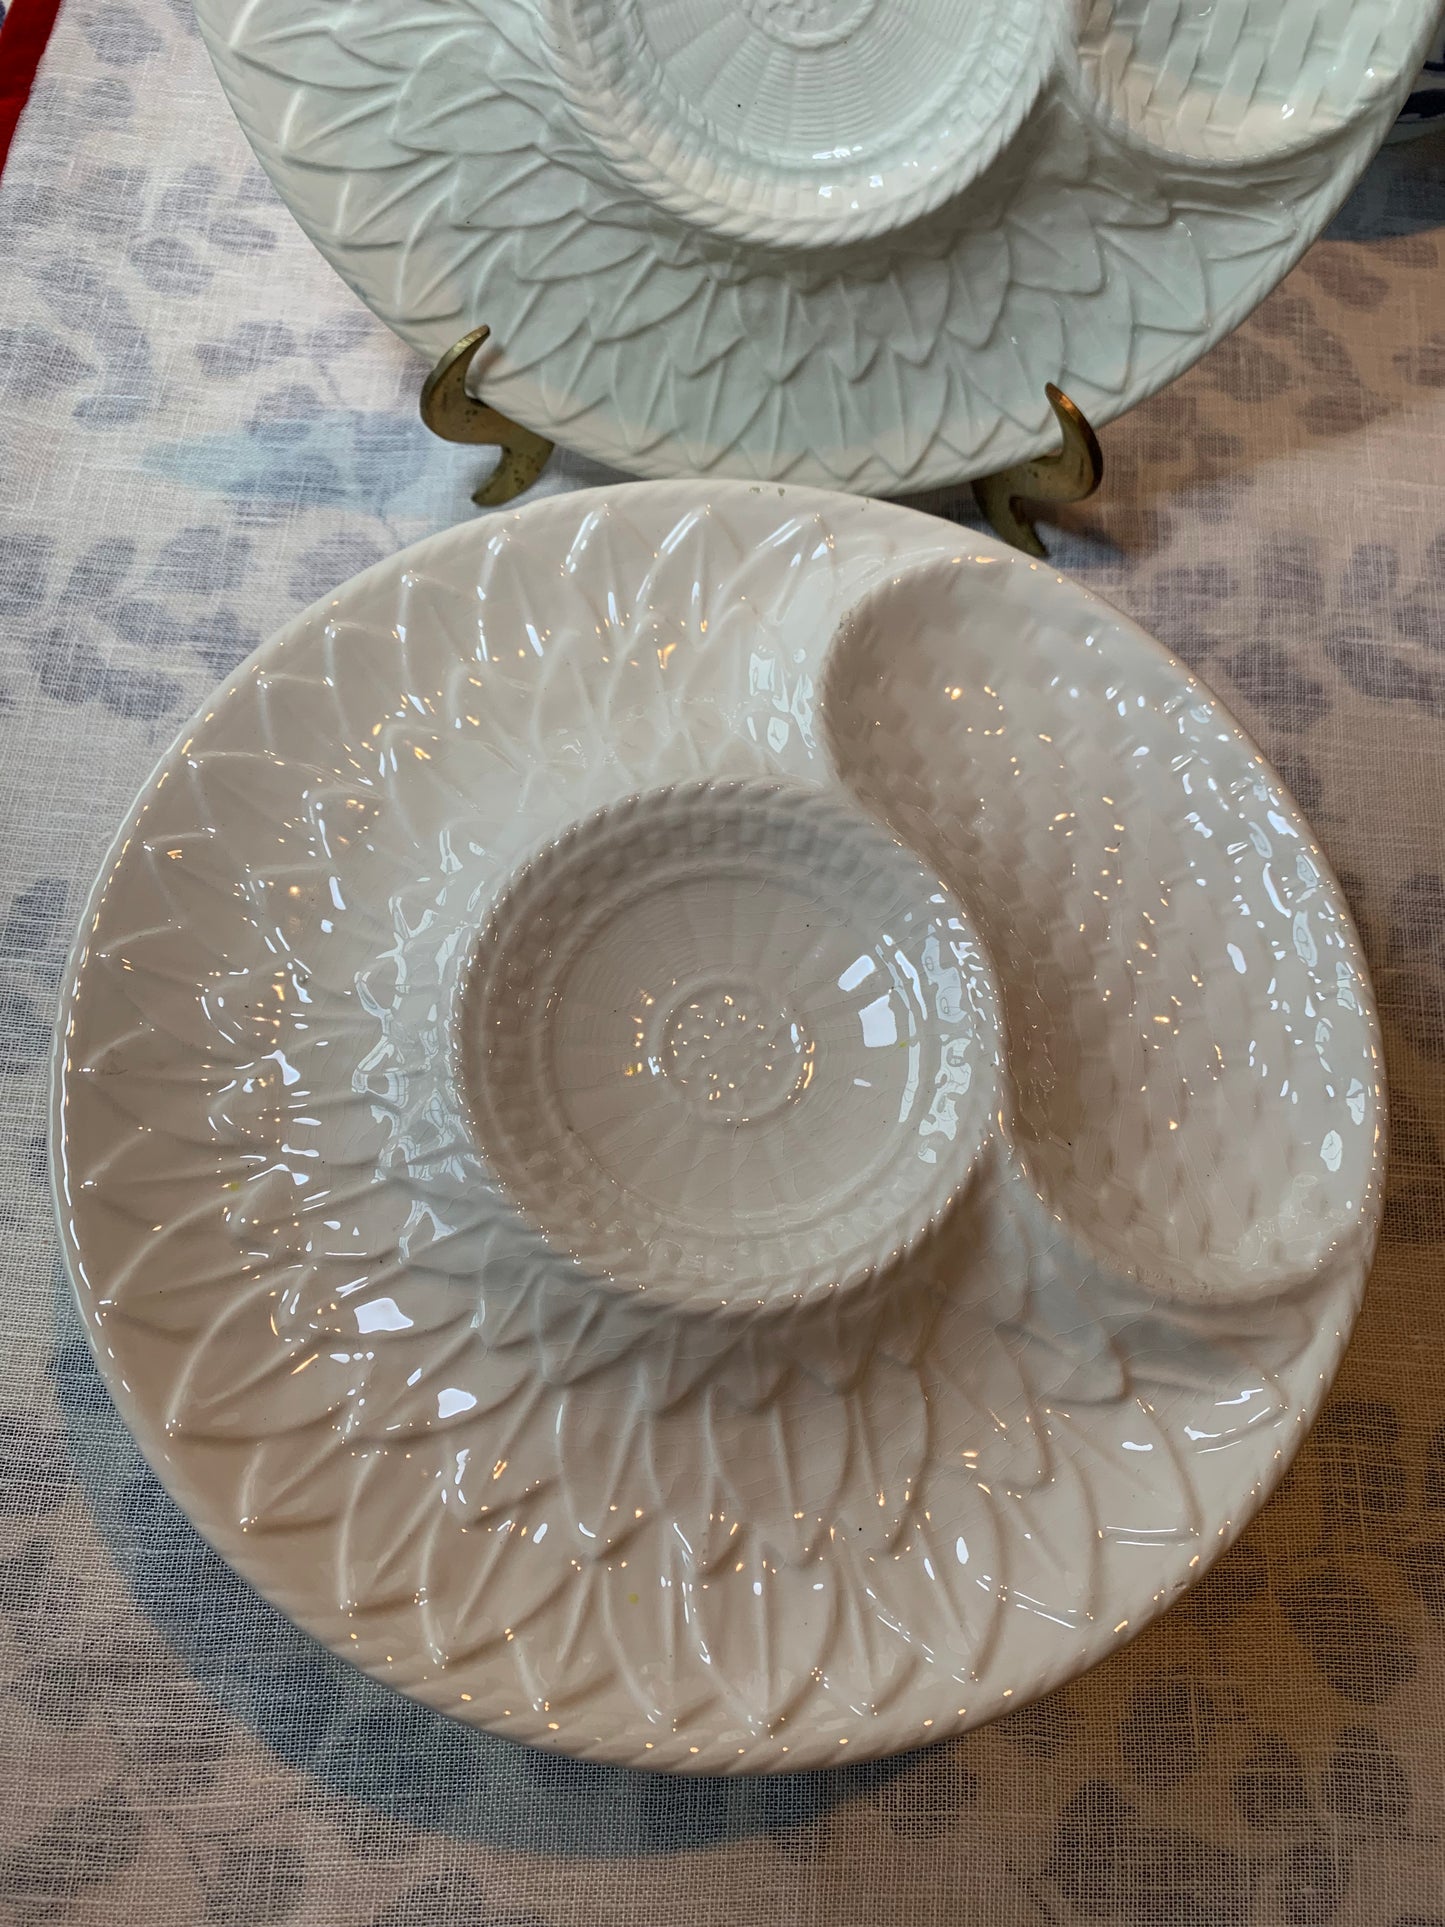 Set (4) of Vintage White Secla Artichoke plates